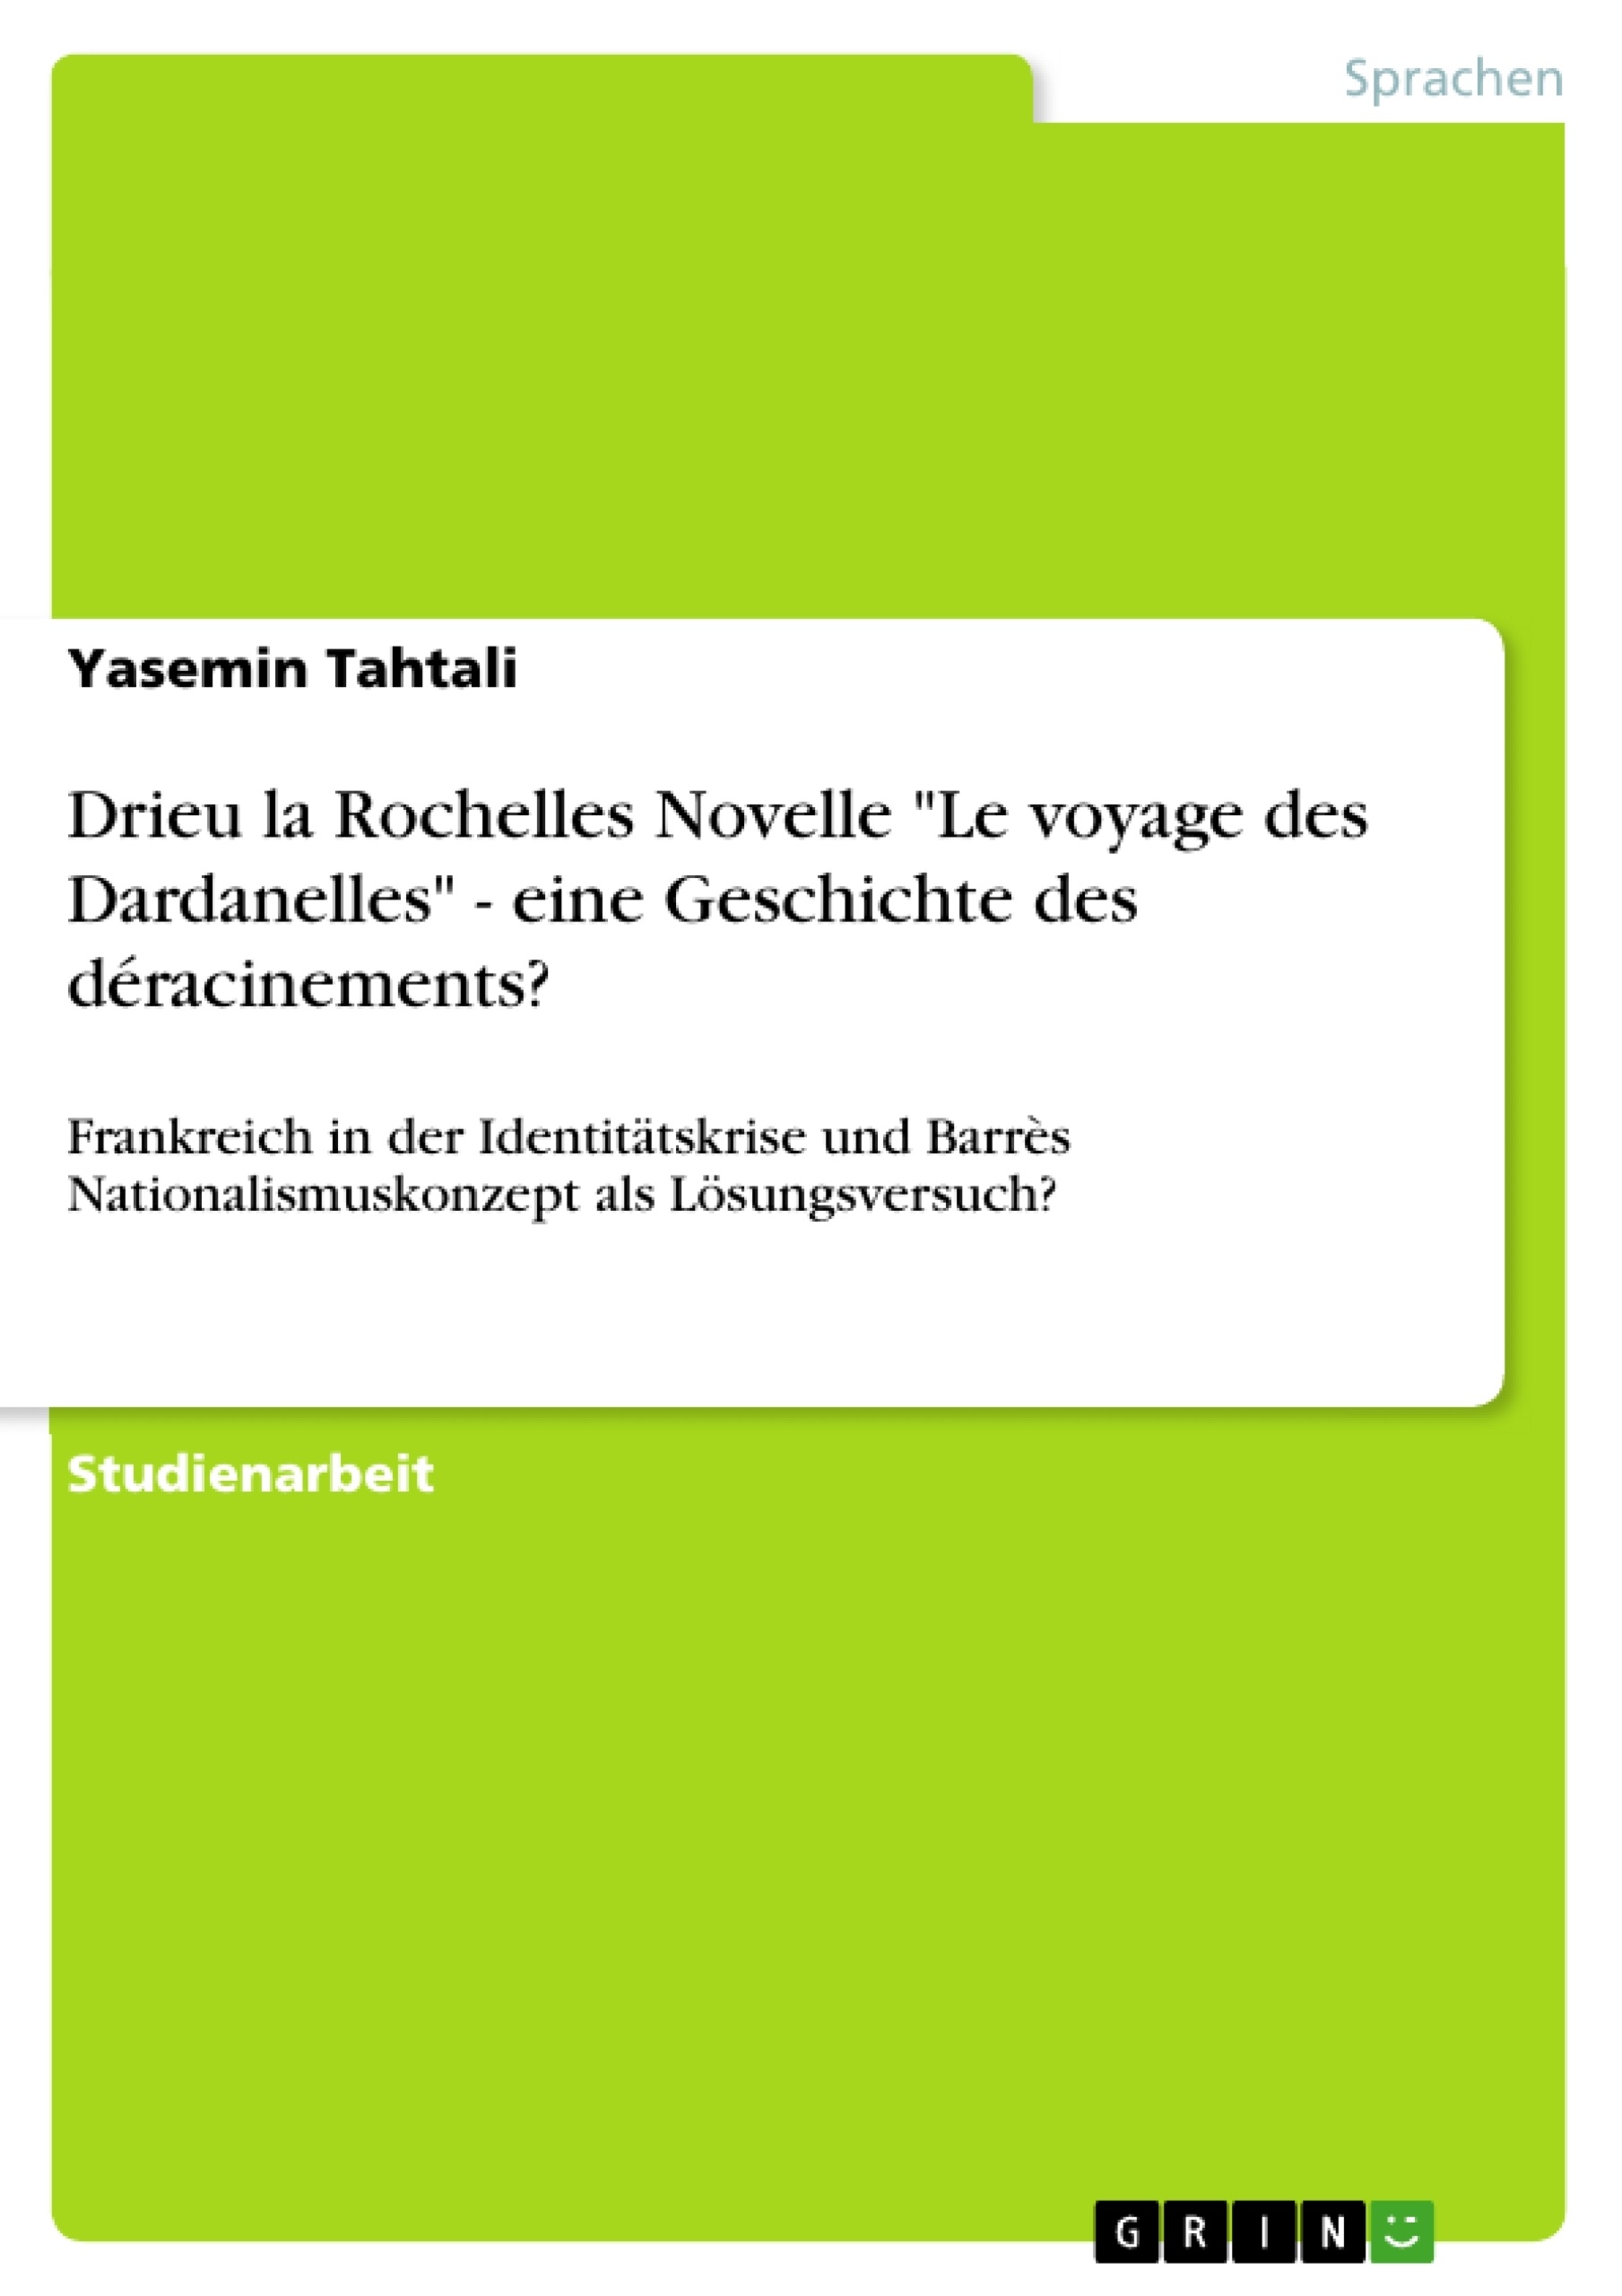 Title: Drieu la Rochelles Novelle "Le voyage des Dardanelles" - eine Geschichte des déracinements?